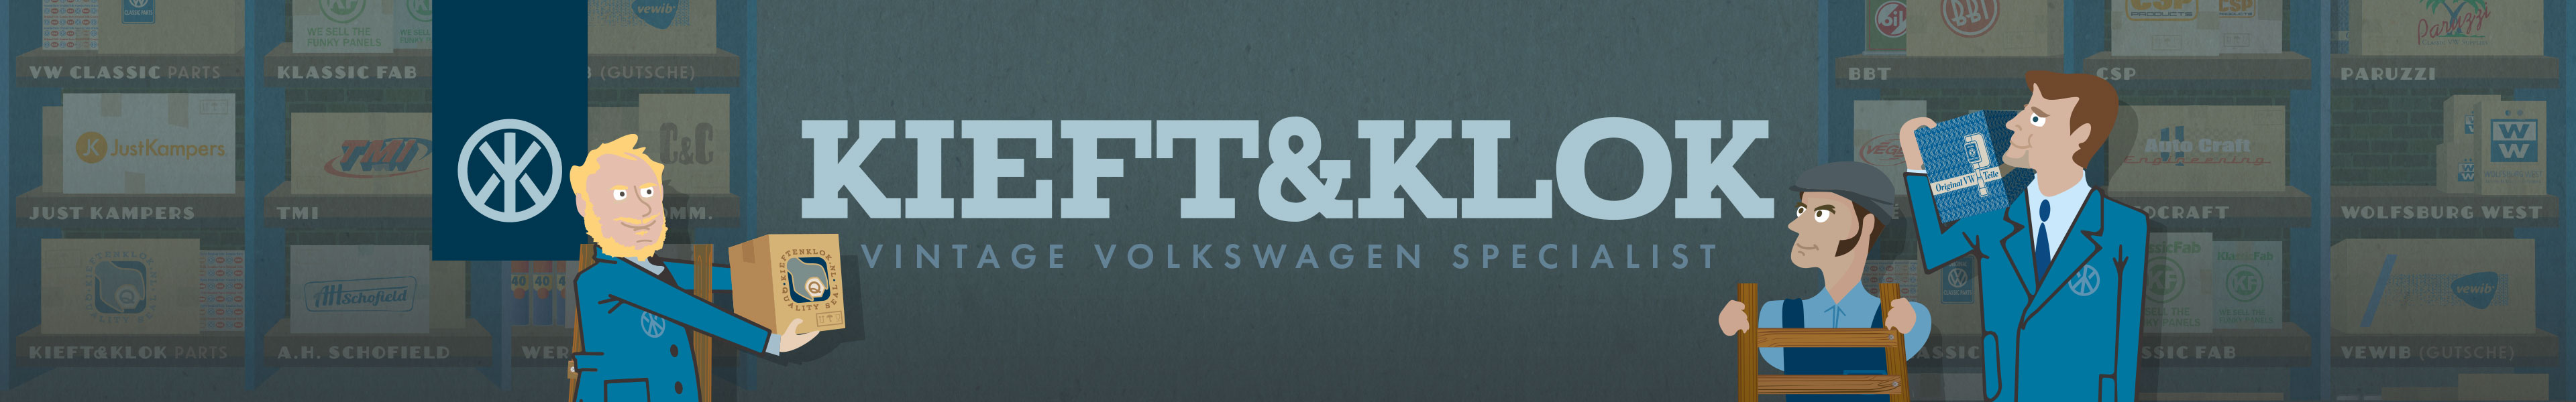 Kieft & Klok Parts